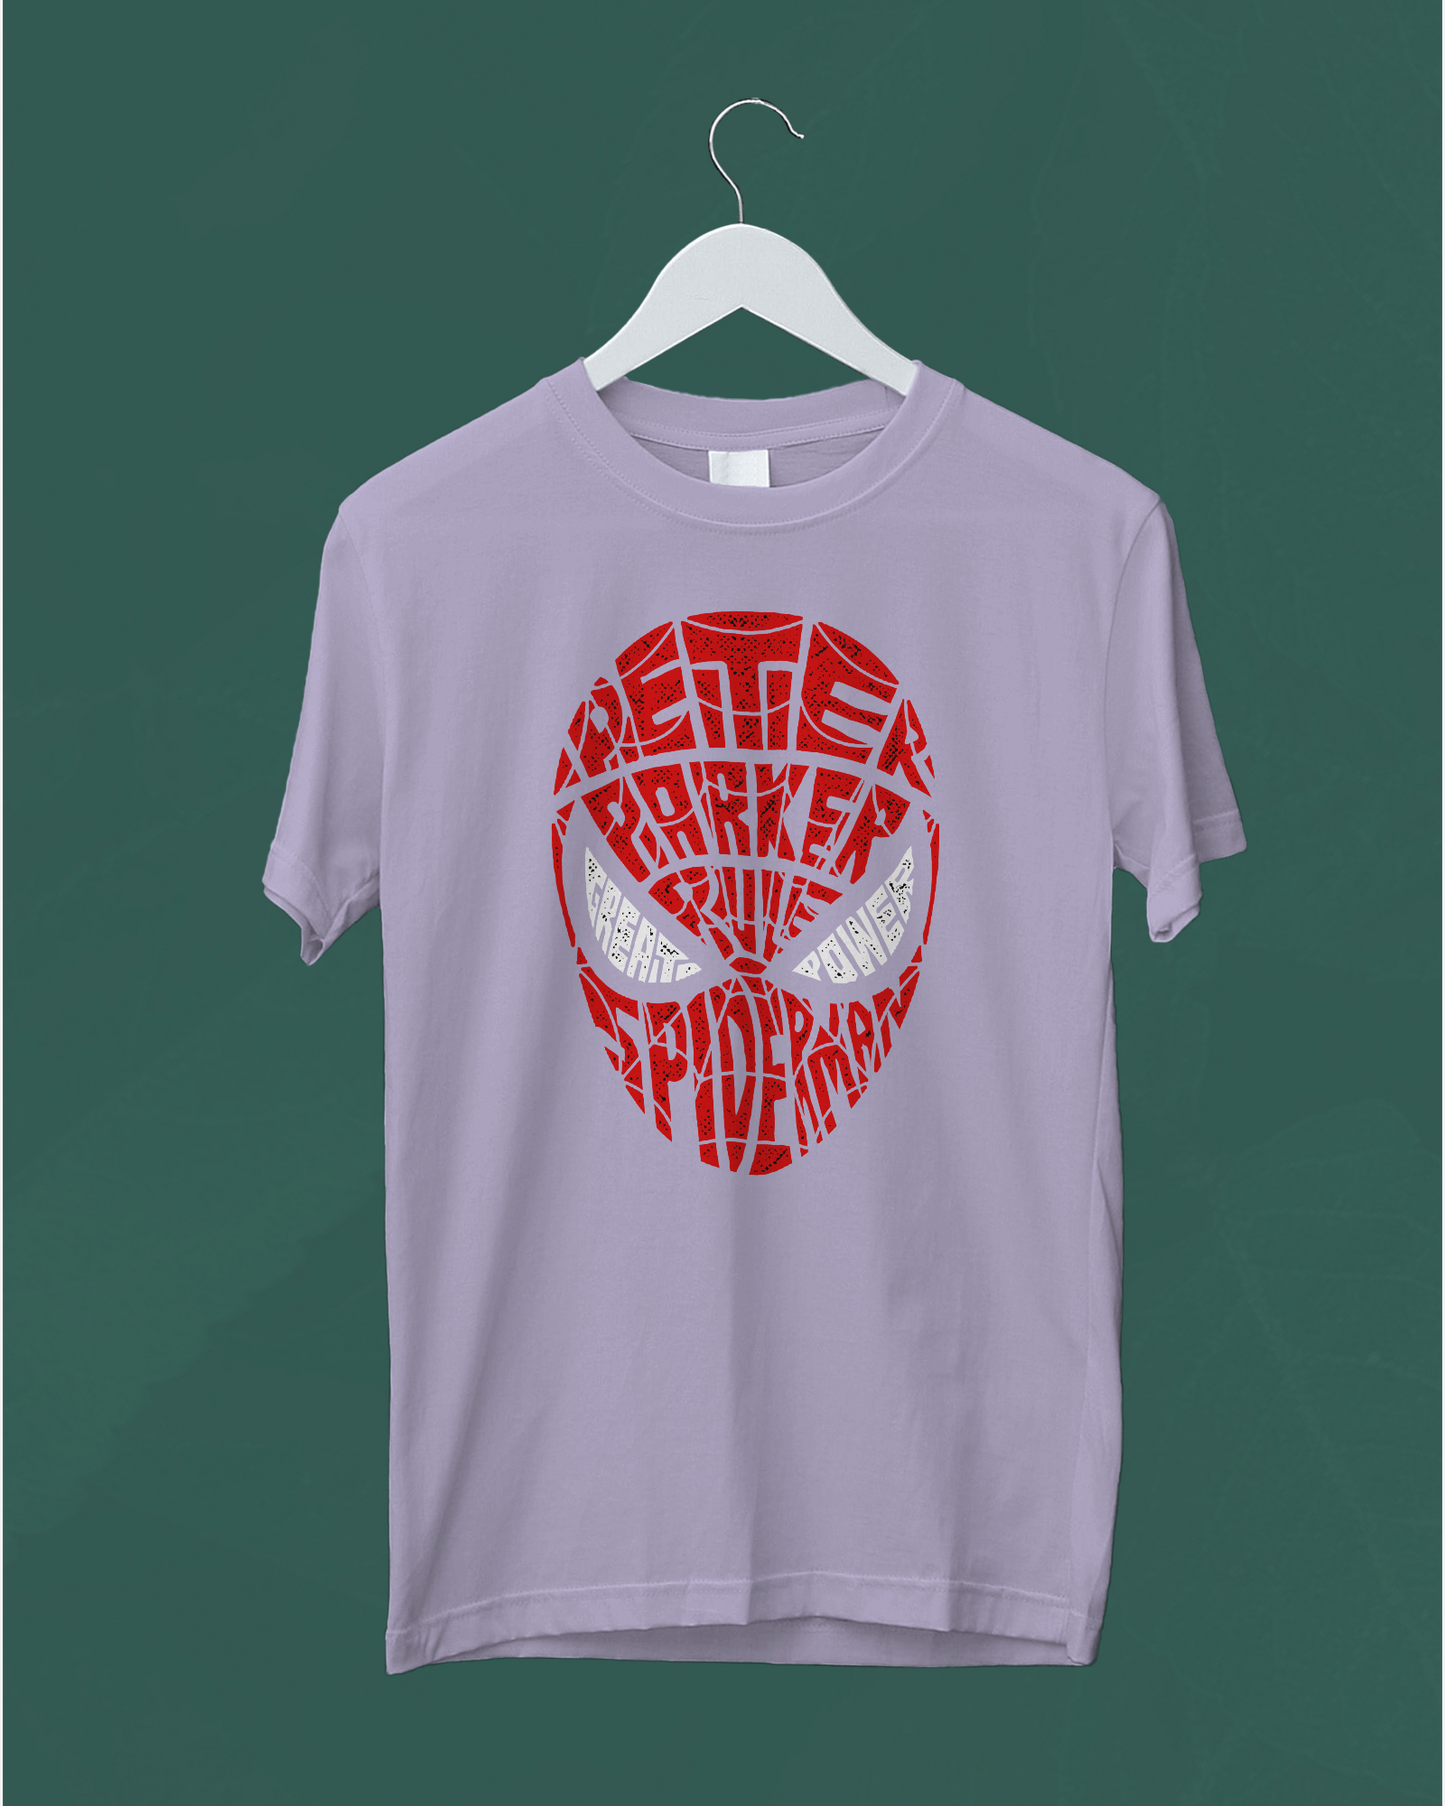 Printed Women T-Shirt | Peter Parker | Spider Man